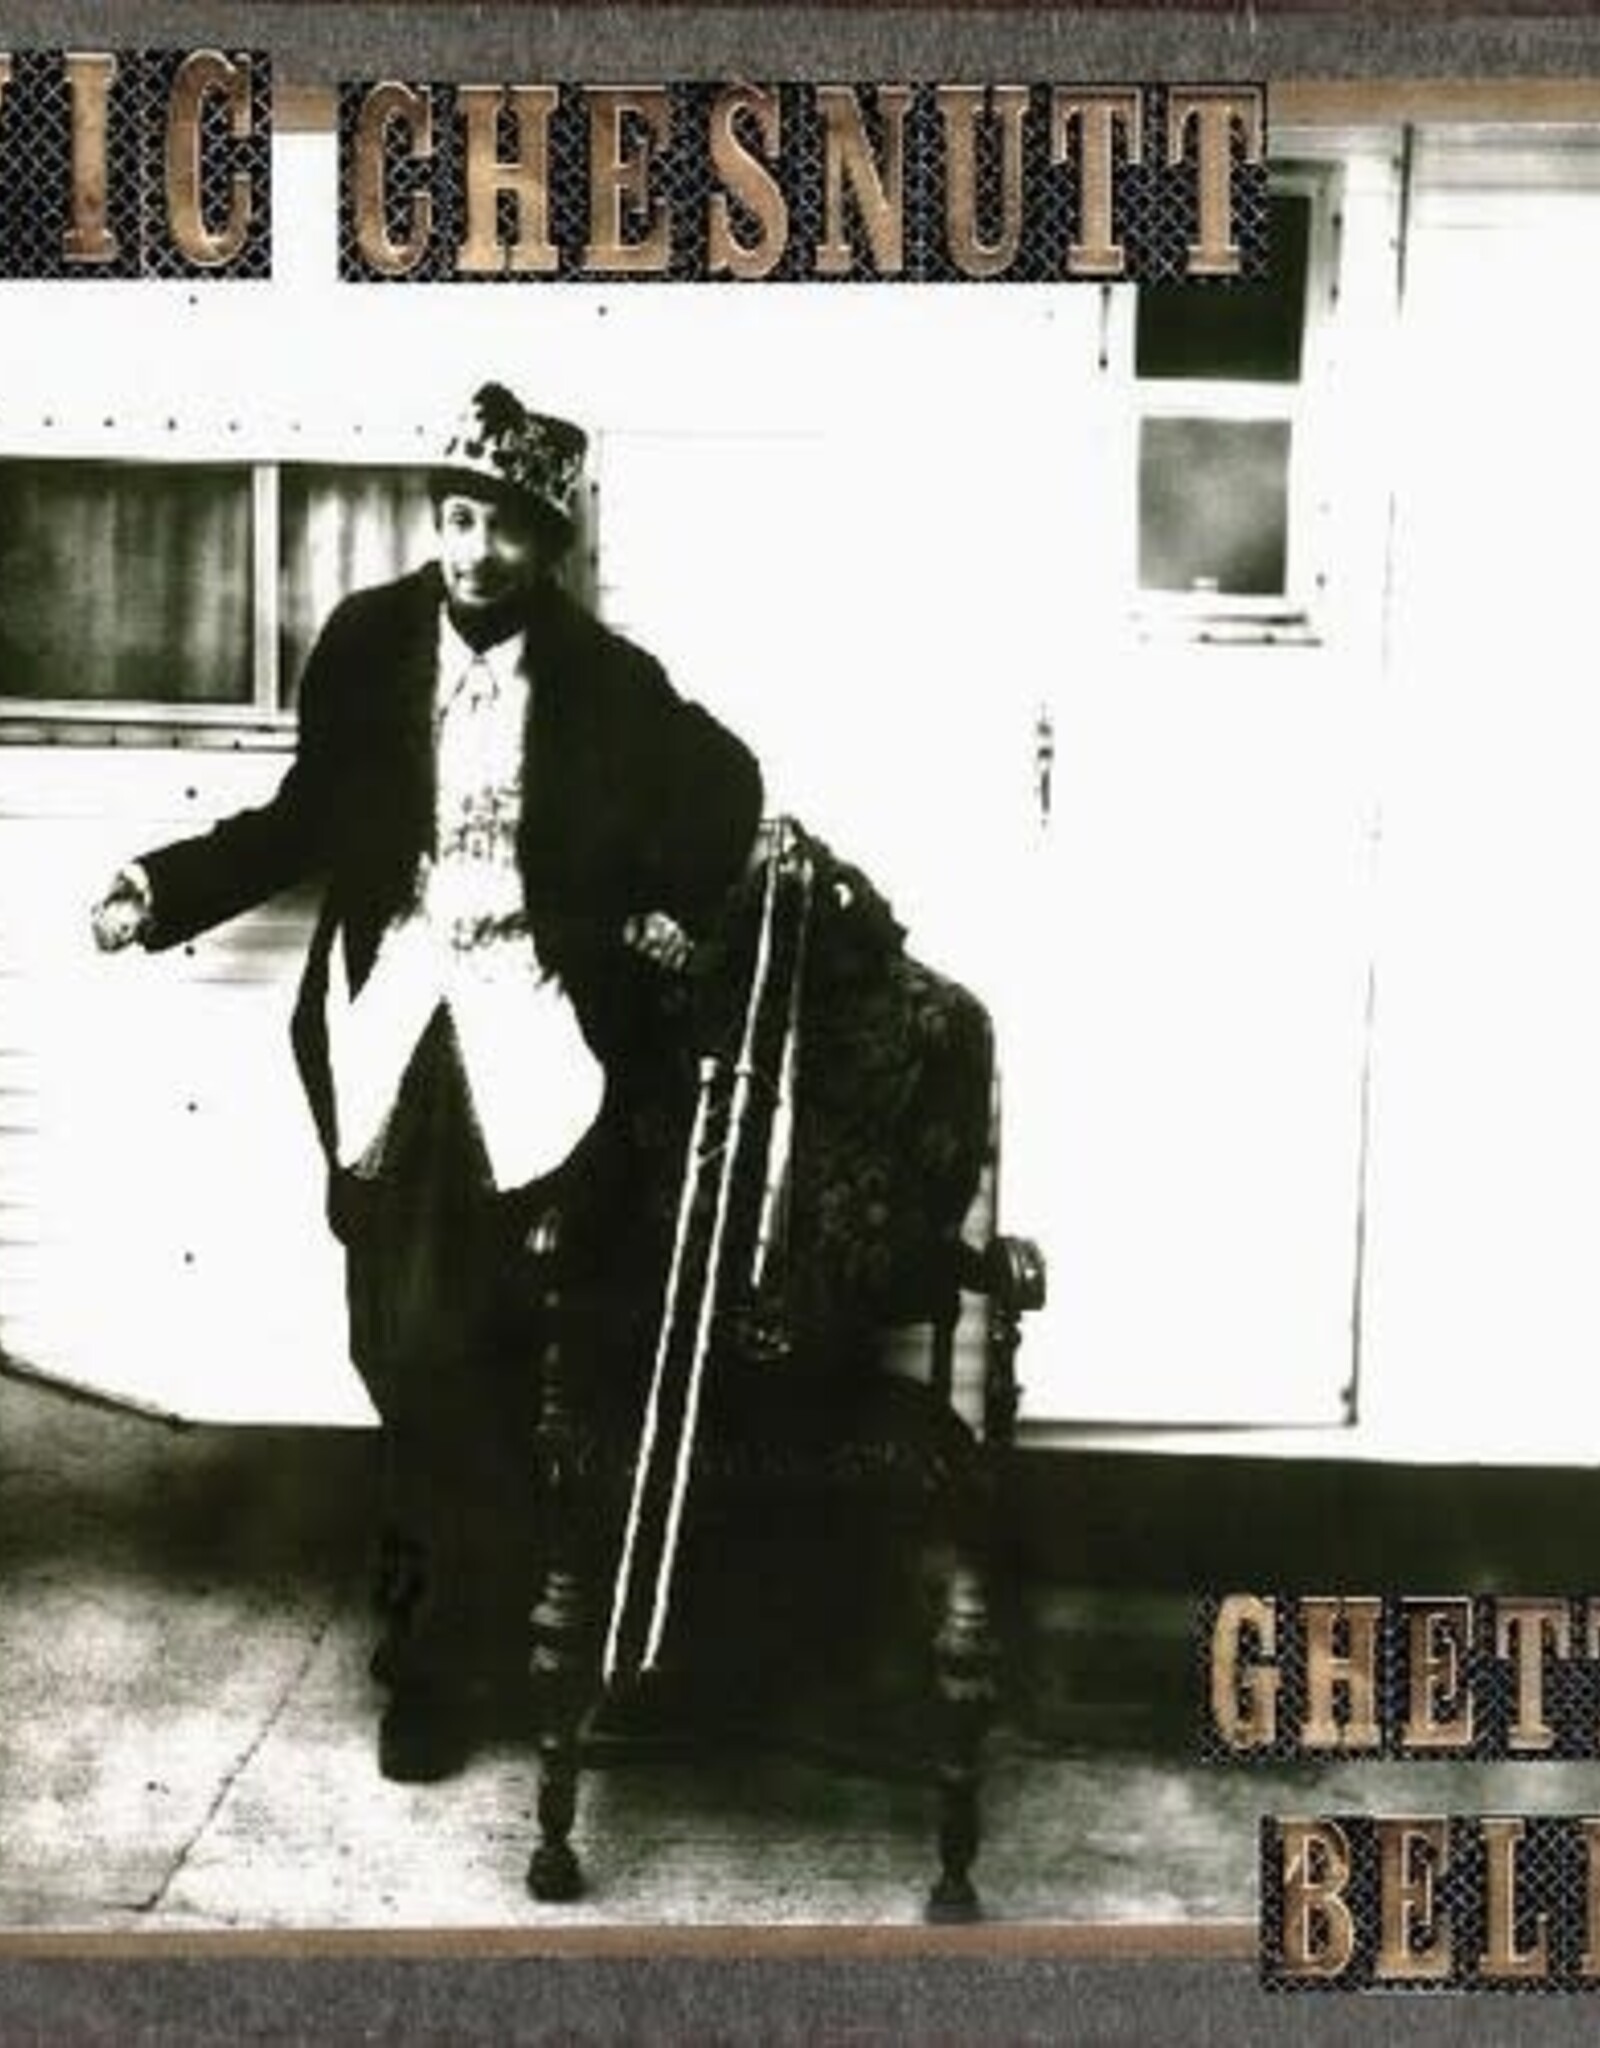 Vic Chesnutt - Ghetto Bells (Brown and Black Split Color Vinyl)